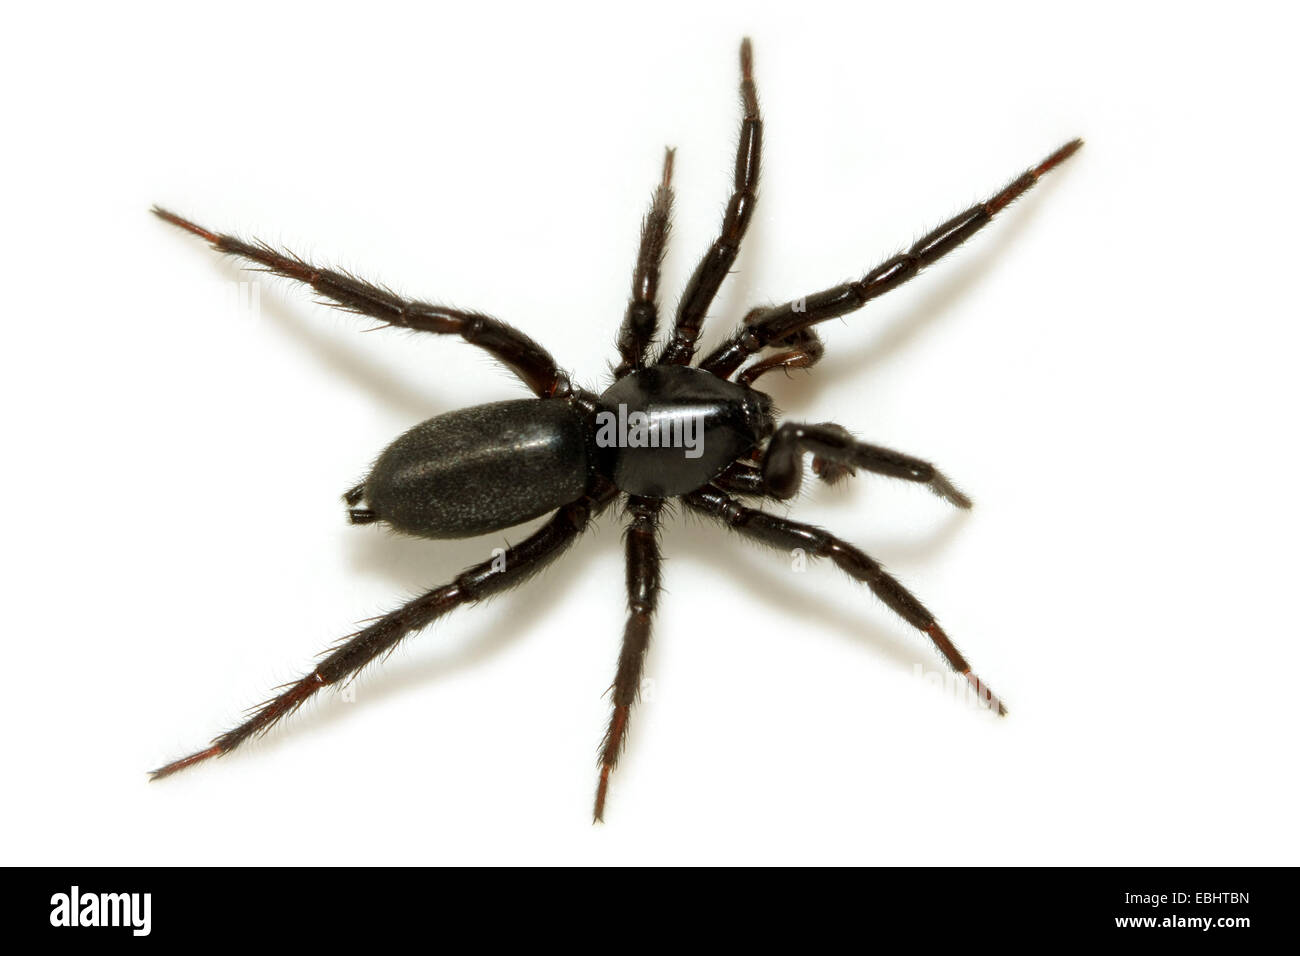 Ein männlicher Boden Spinne (Zelot subterraneus) auf weißem Hintergrund. Boden Spinnen sind Teil der Familie Gnaphosidae. Stockfoto